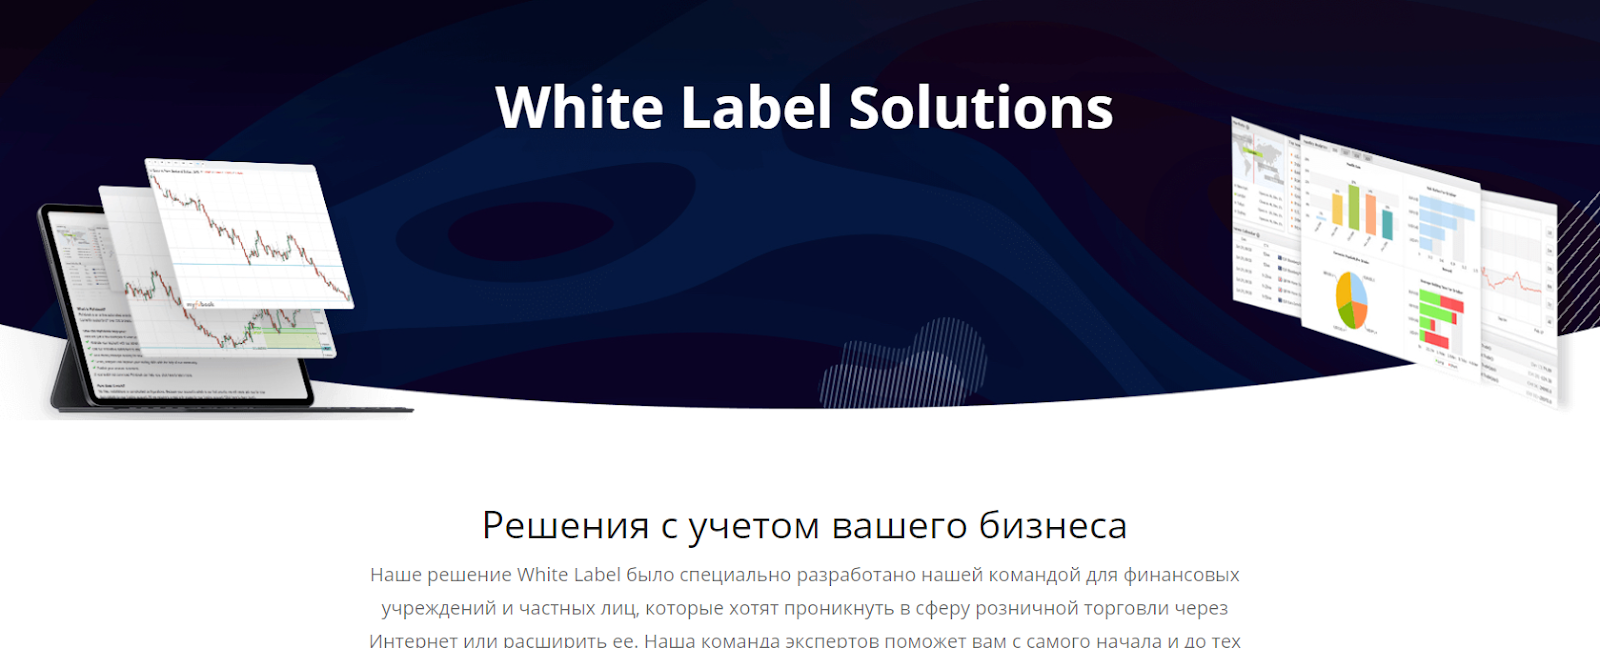 Обзор IronFX - White Label